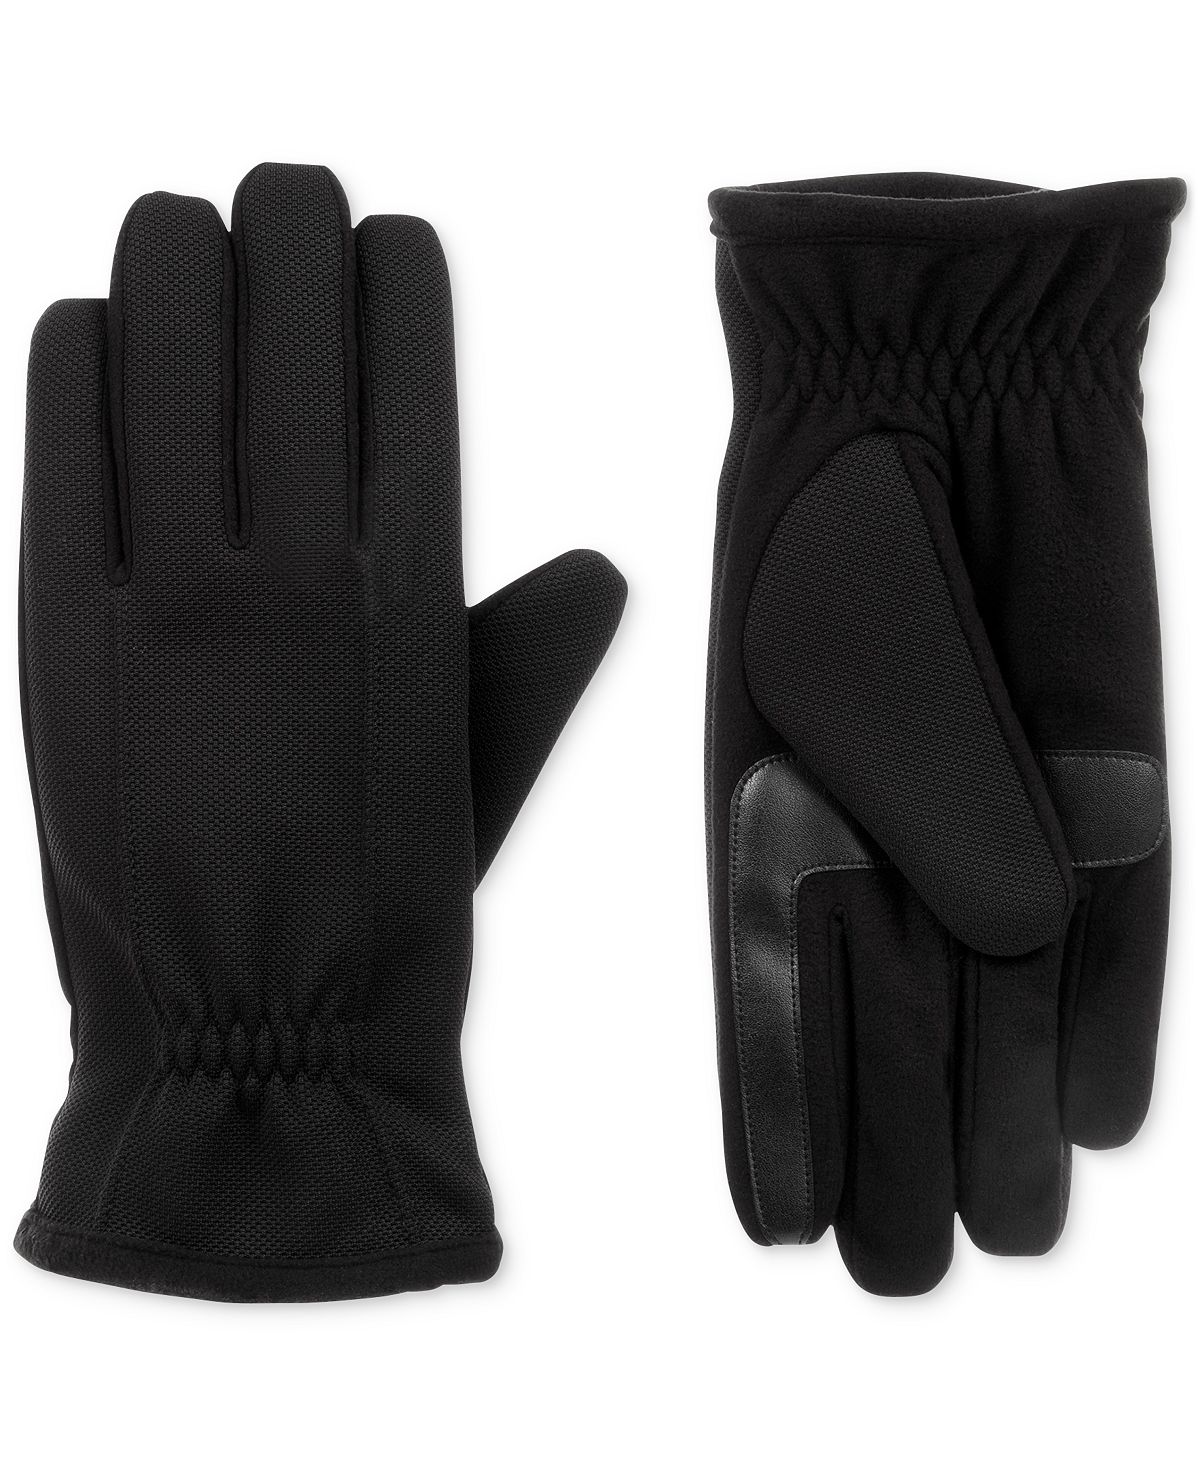 Мужские технические эластичные перчатки Isotoner Signature